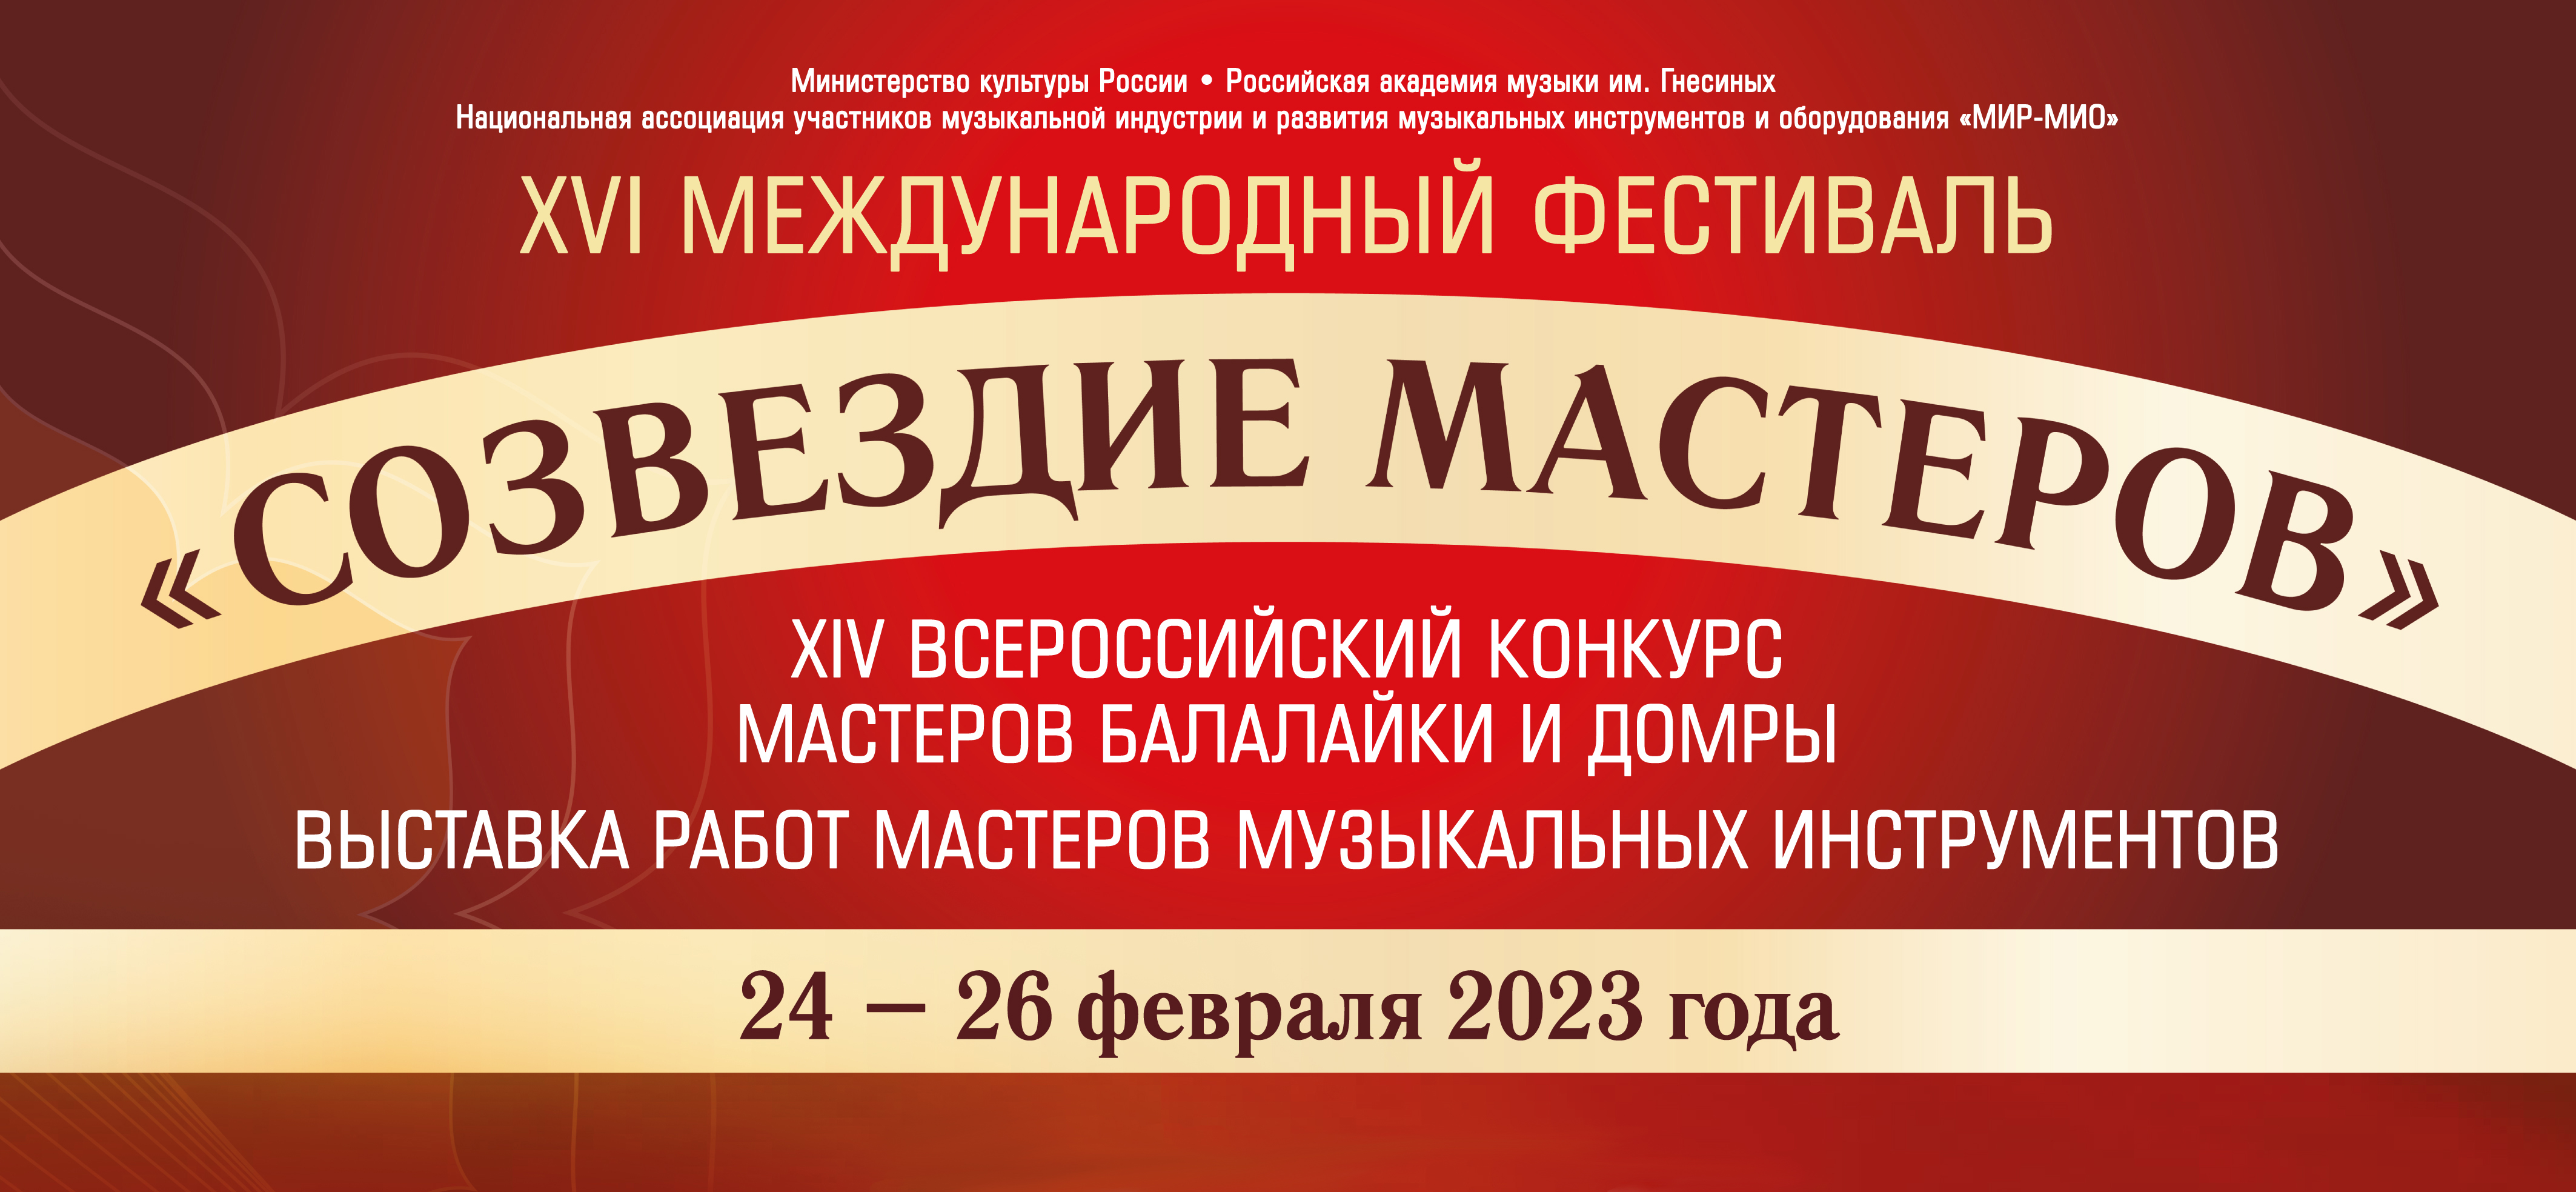 XVI МЕЖДУНАРОДНЫЙ ФЕСТИВАЛЬ «СОЗВЕЗДИЕ МАСТЕРОВ» (24-26 февраля 2023)